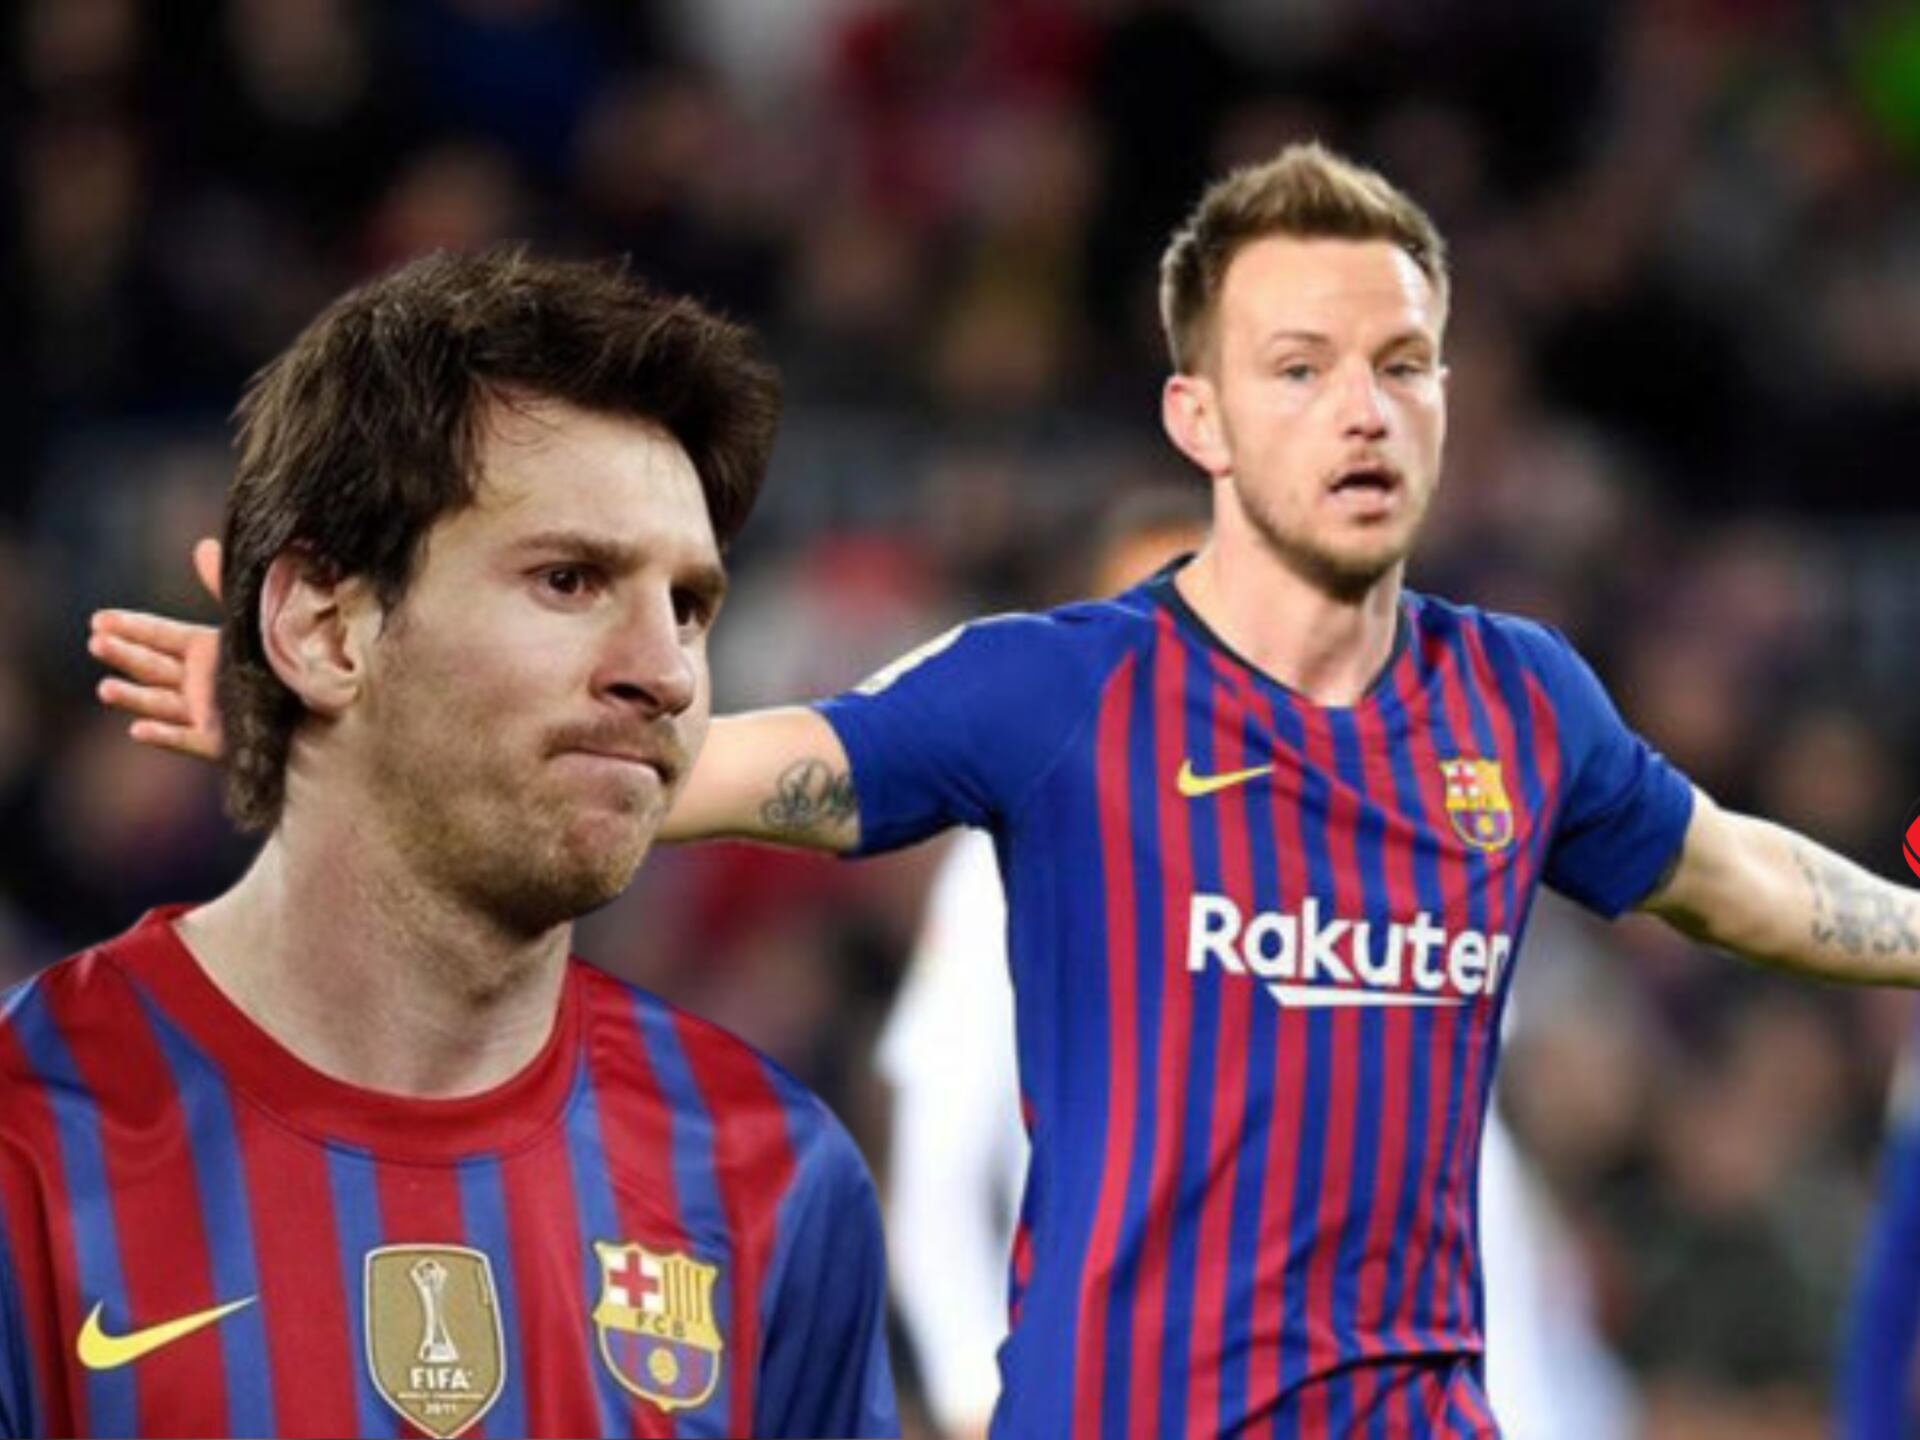 Jugaron juntos 6 años, la frase de Rakitic que no deja bien parado a Messi 